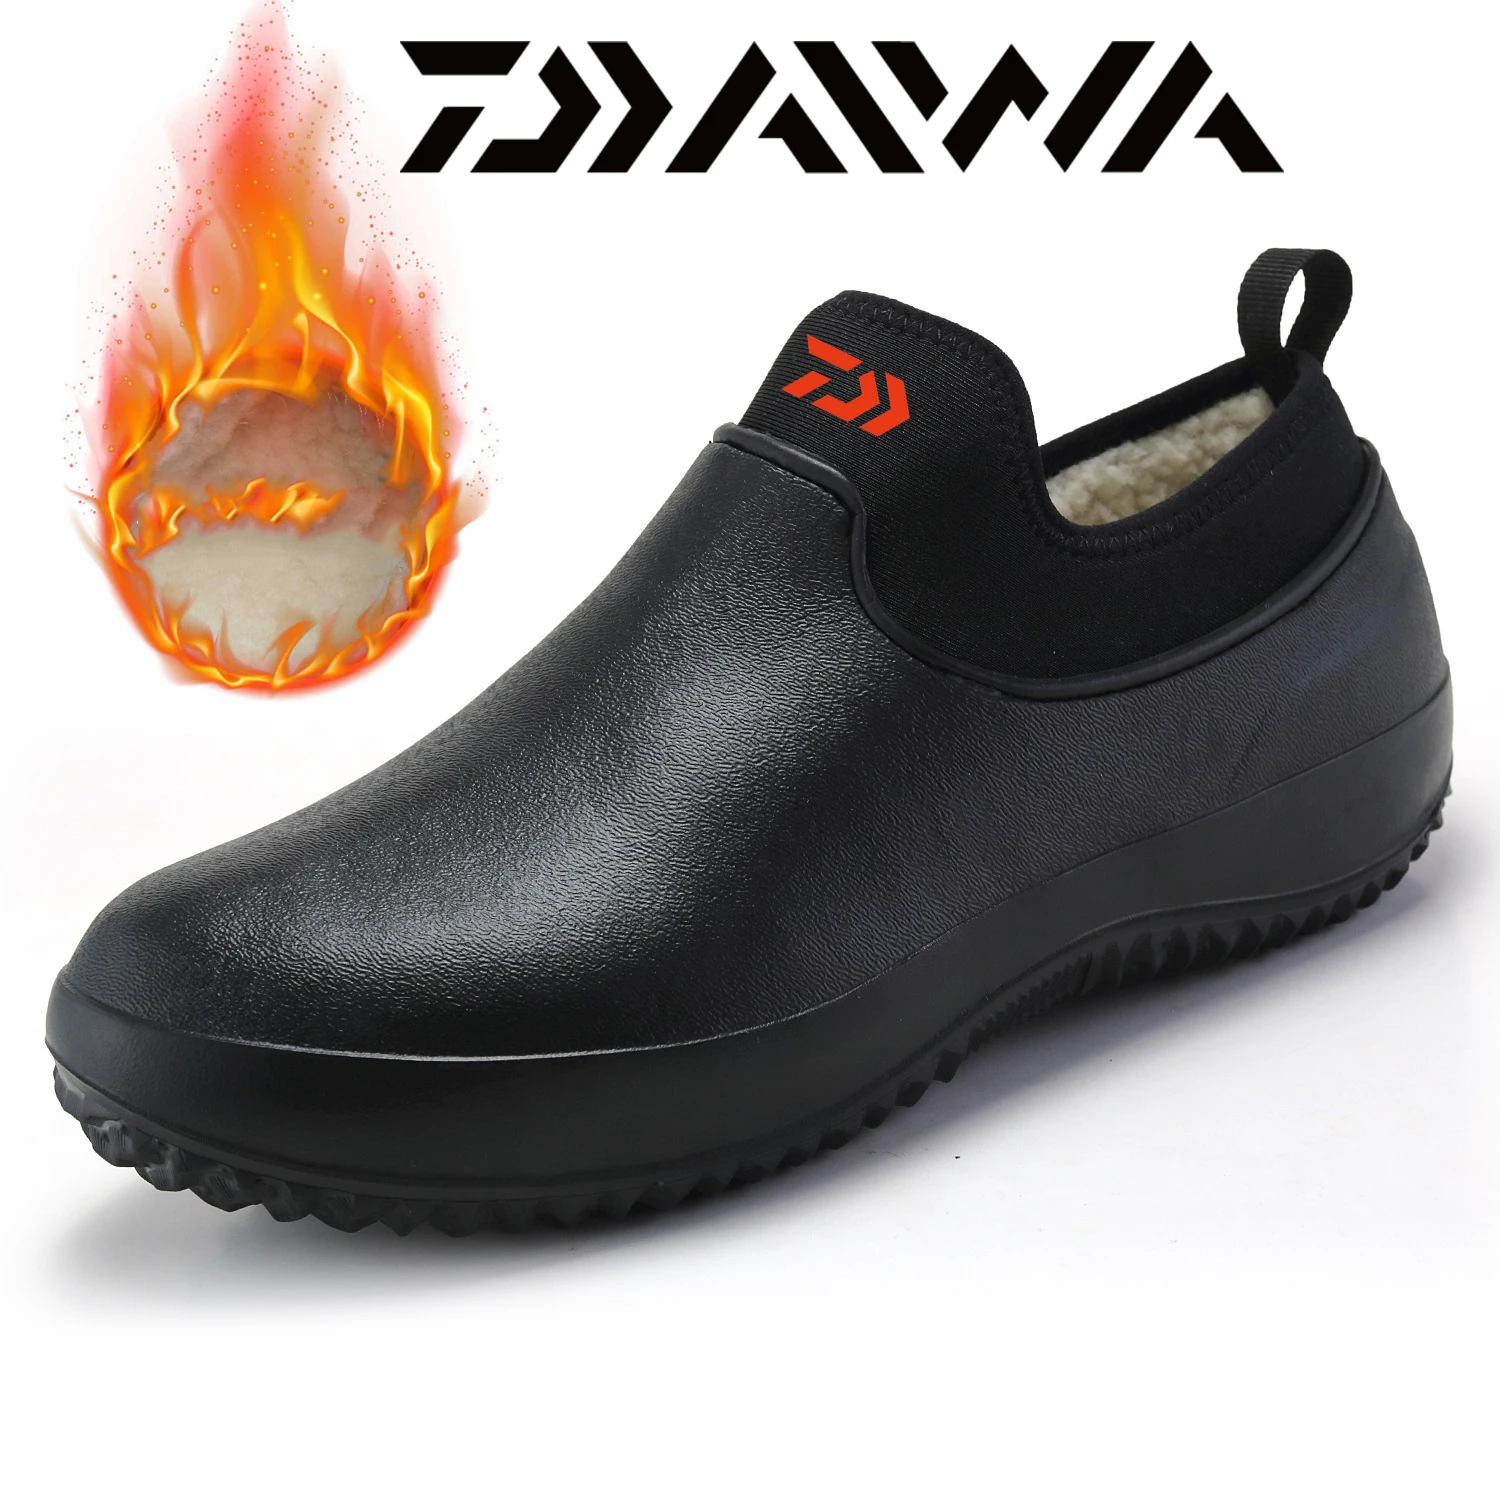 

Daiwa Winter Non-slip Outdoor Shoes New Warm Waterproof Fishing Shoes DAWA Fashion Rain Boots Outdoor Shoes Size 35-47